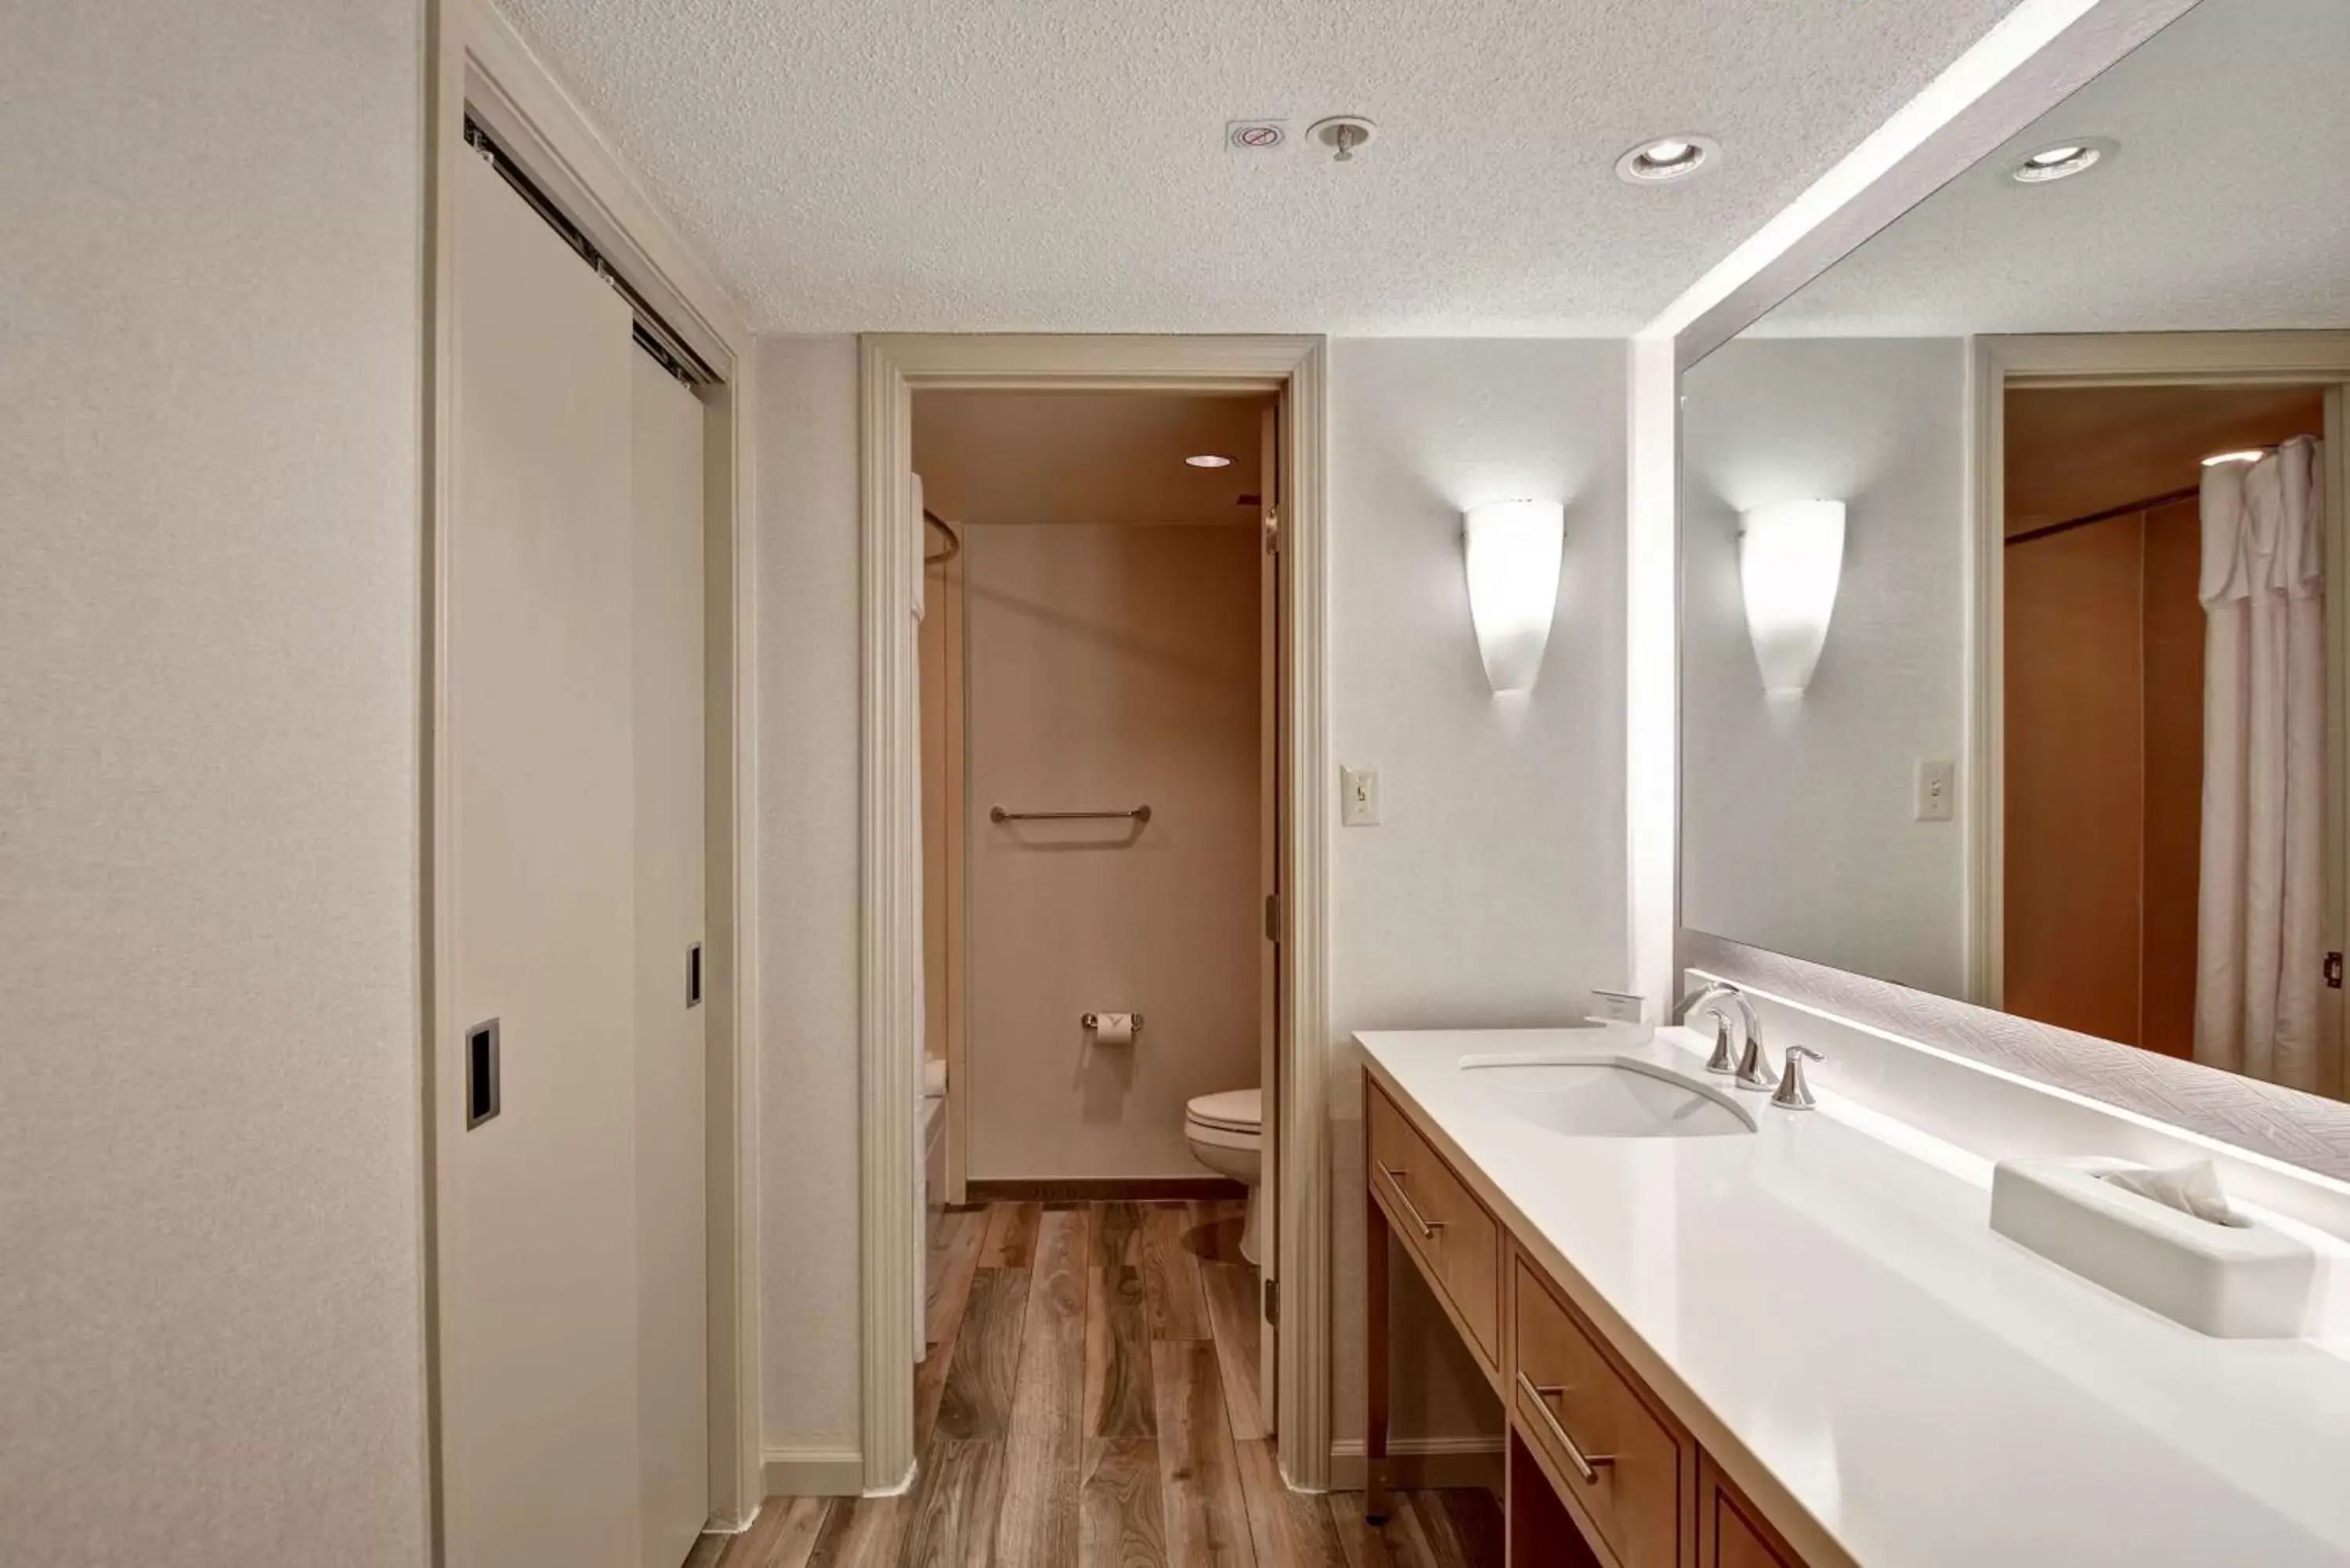 Living room, Bathroom in Homewood Suites Hartford/Windsor Locks